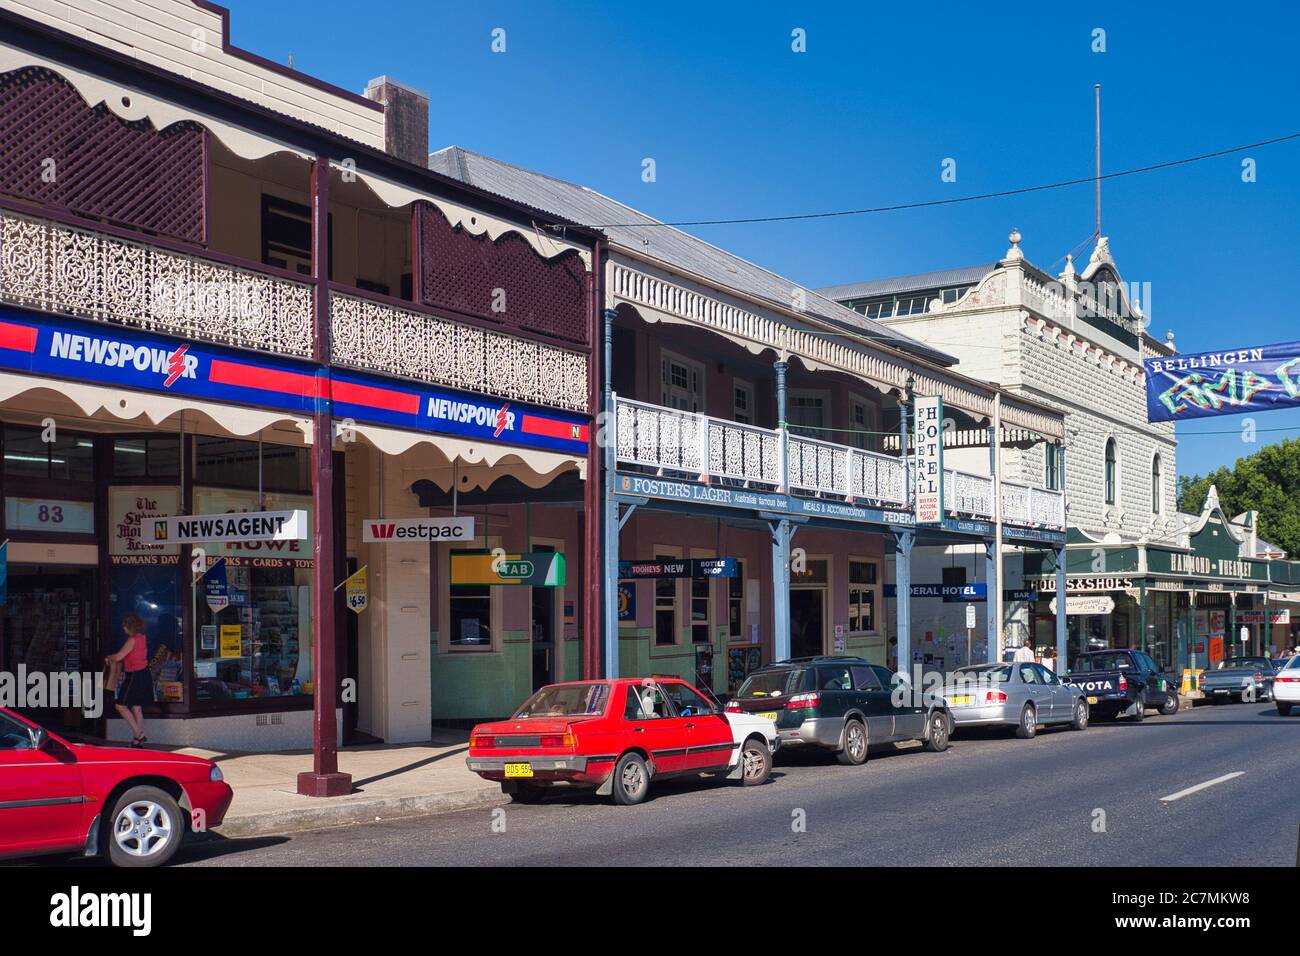 Tipica architettura dei primi del 1900 di passaggi coperti e balconi decorativi in ferro battuto nella cittadina di Bellingen, a metà del NSW., Australia Foto Stock